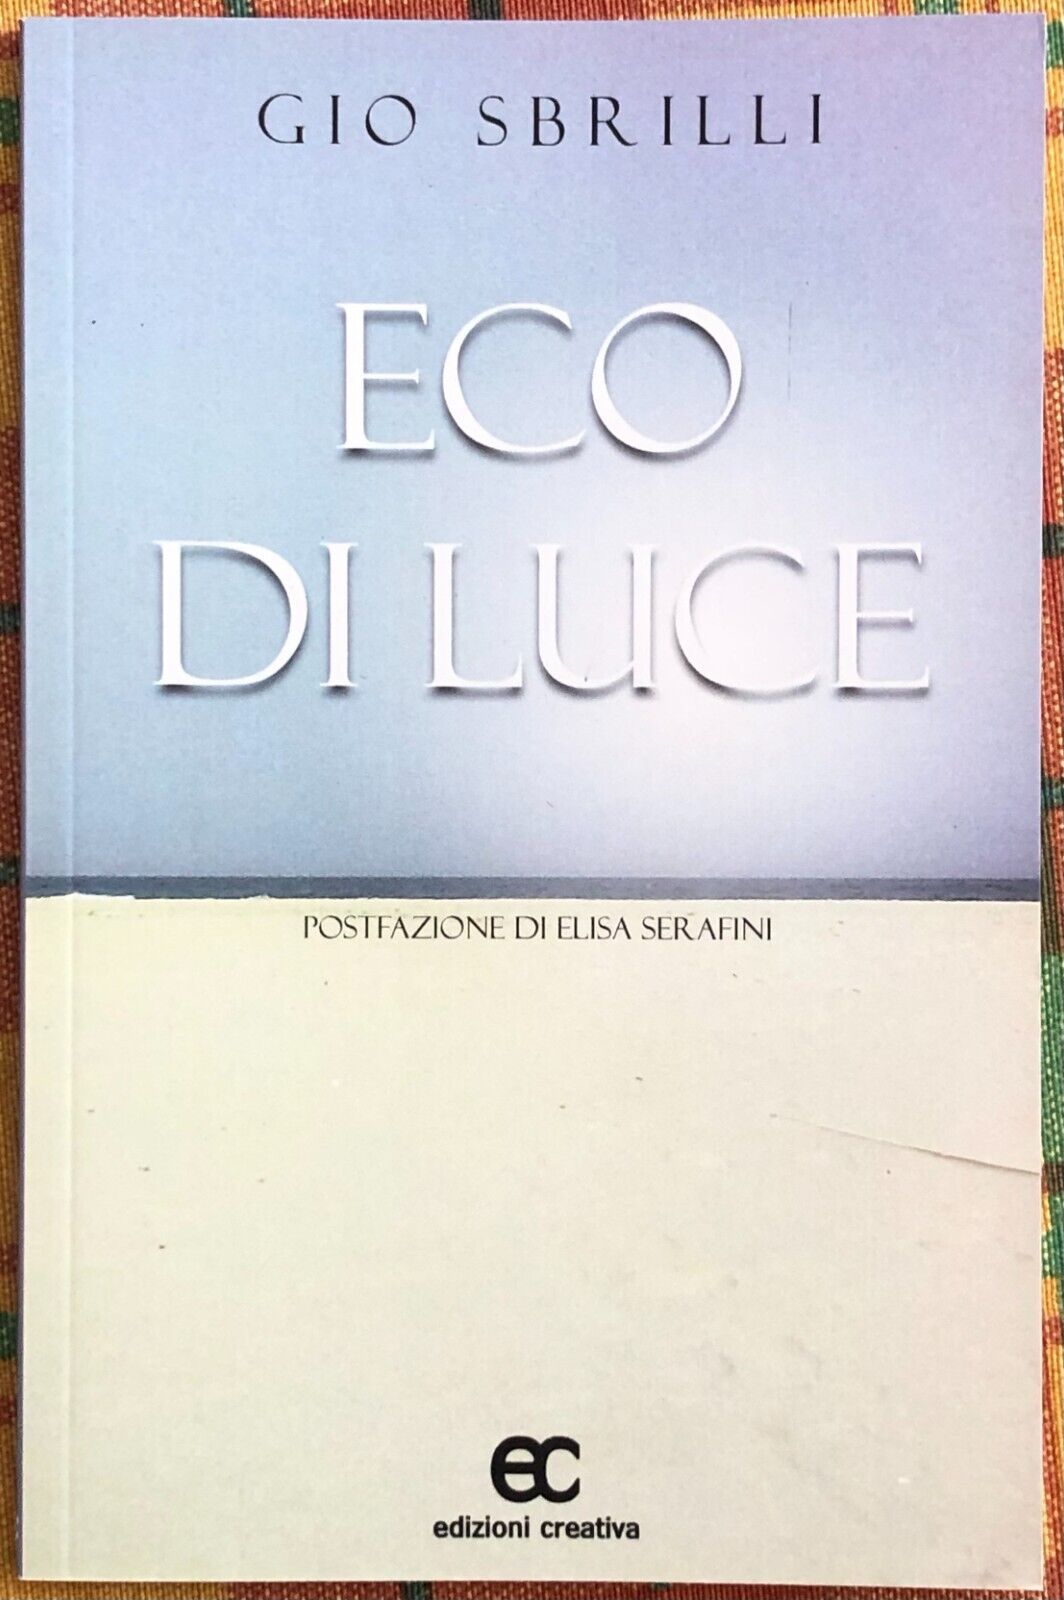  Eco di luce di Gio Sbrilli, 2017, Edizioni Creativa